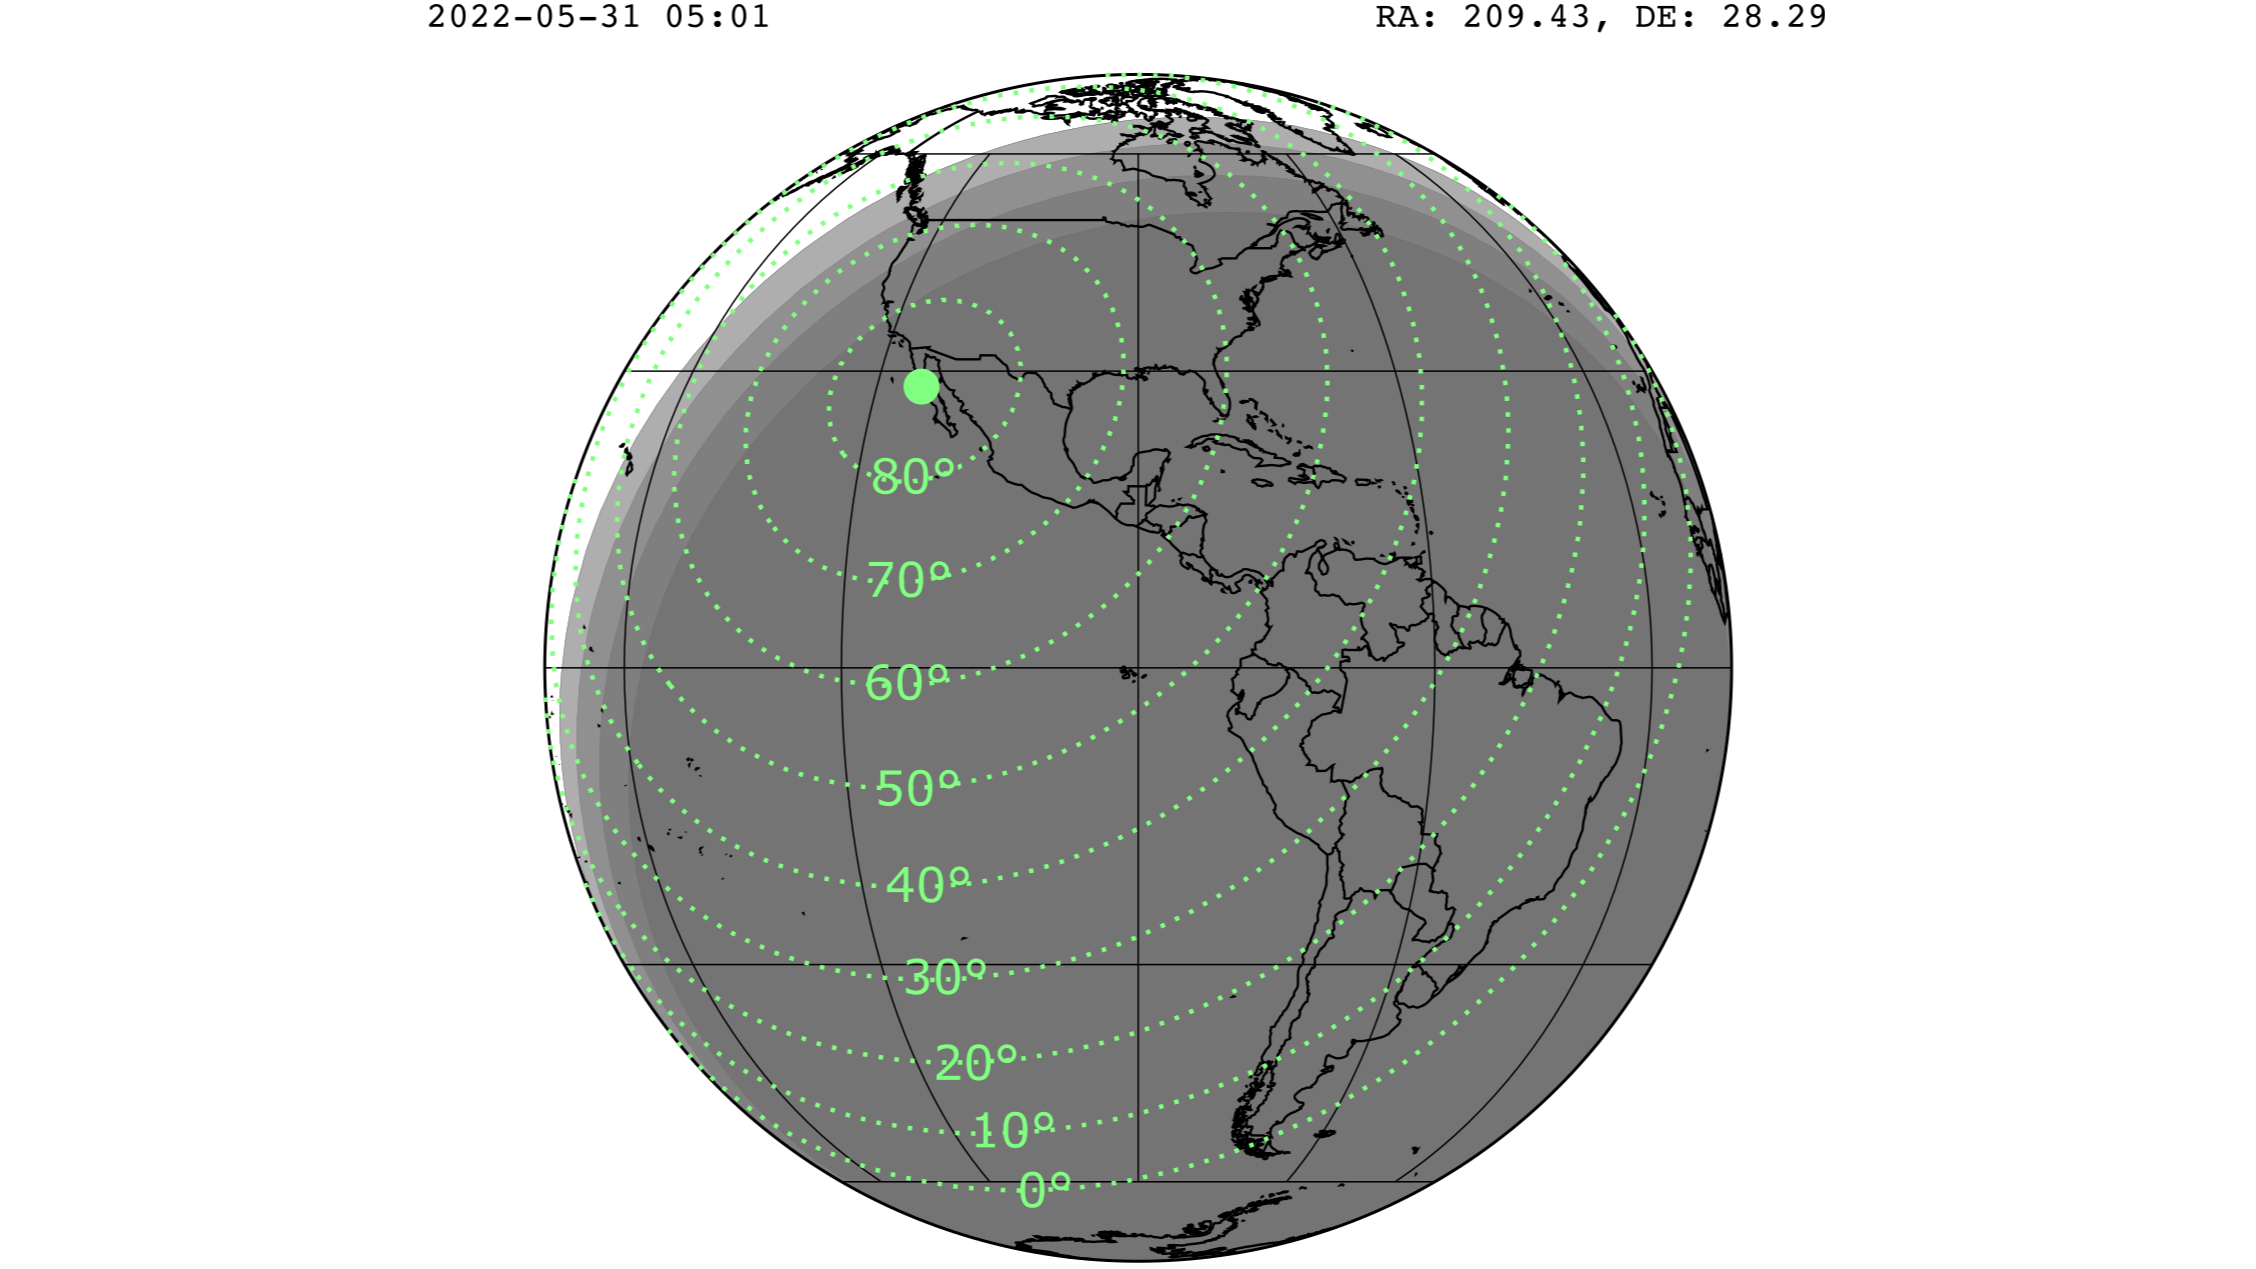 Mapa mostrando a possibilidade de ver a chuva de meteoros Tau Herclide.